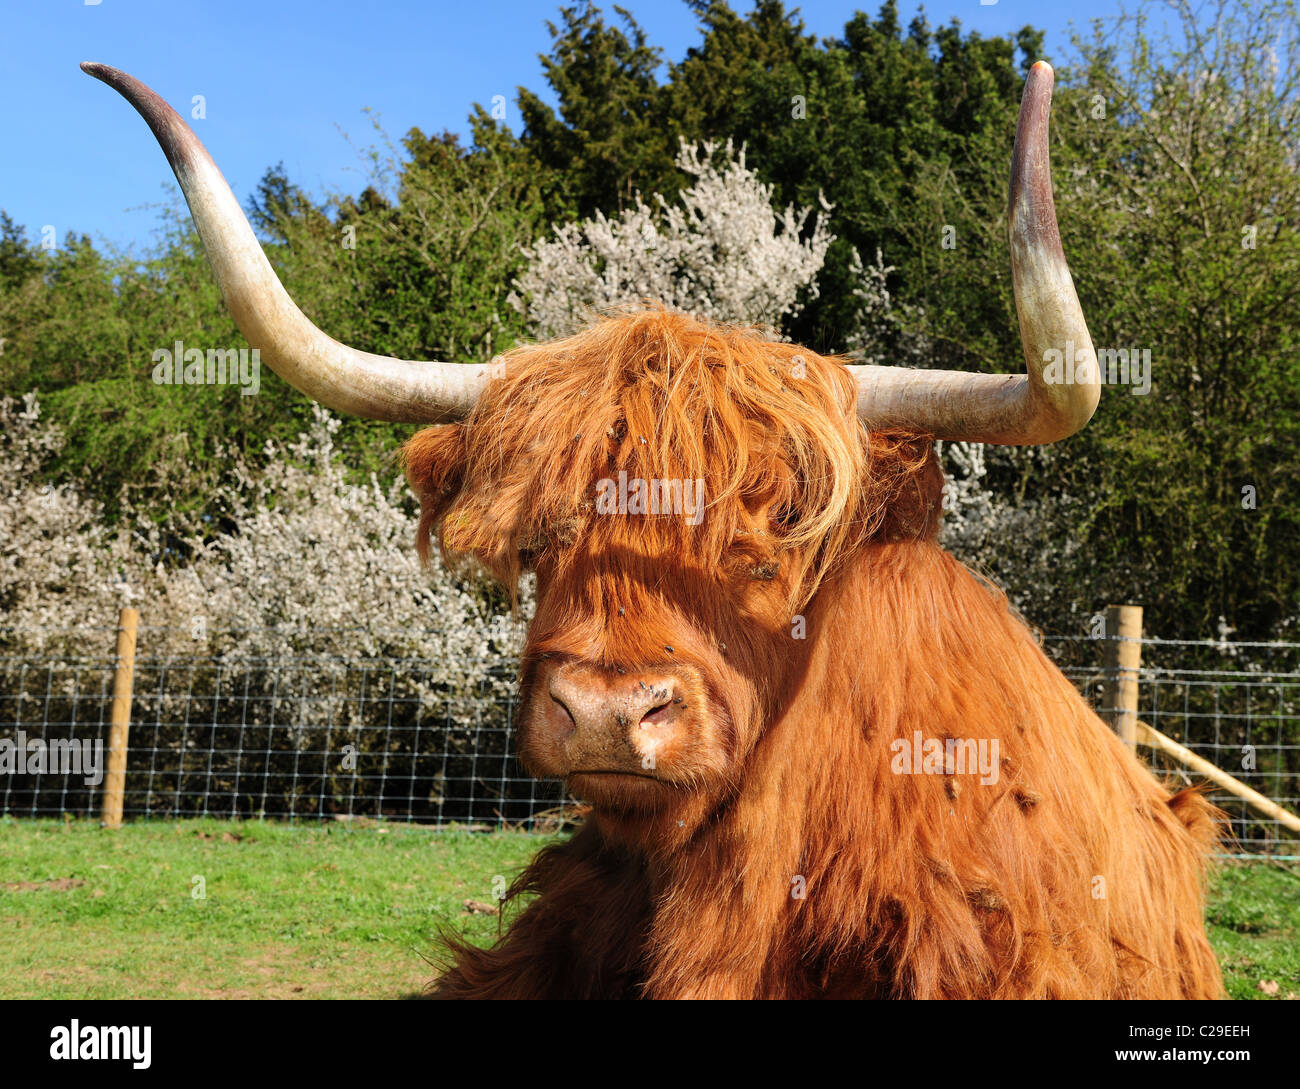 Highland ganado o kyloe. Una escocesa antigua raza de ganado vacuno, con elegantes cuernos largos y abrigos largos, Foto de stock